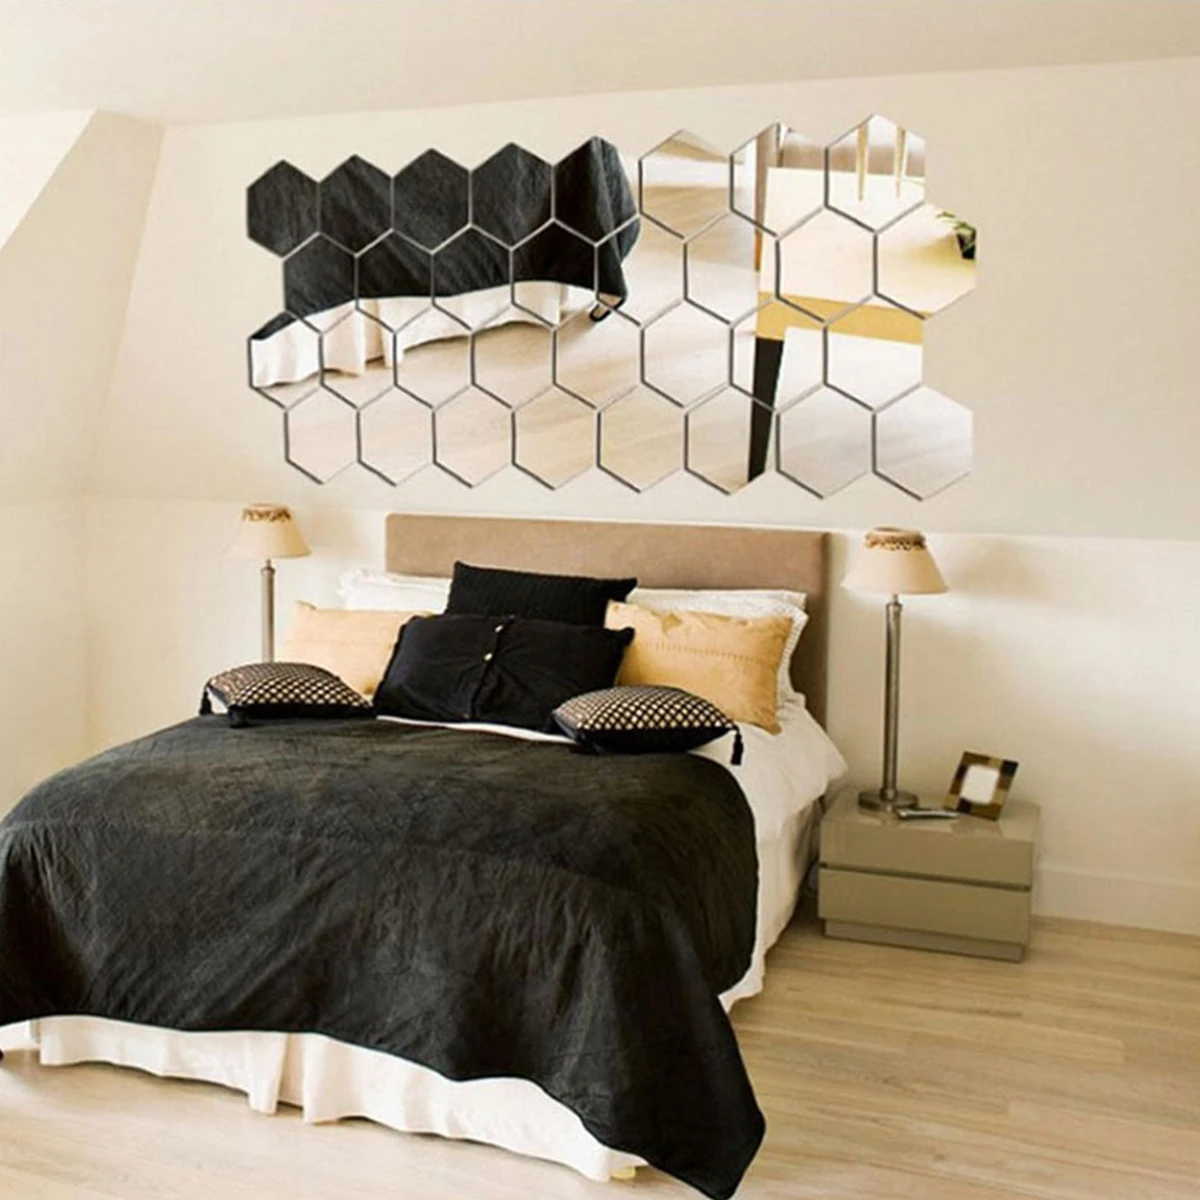 12 шт шестиугольных зеркальных самоклеящихся акриловых съемных 3D настенных зеркальных плиток для украшения дома, гостиной, спальни.